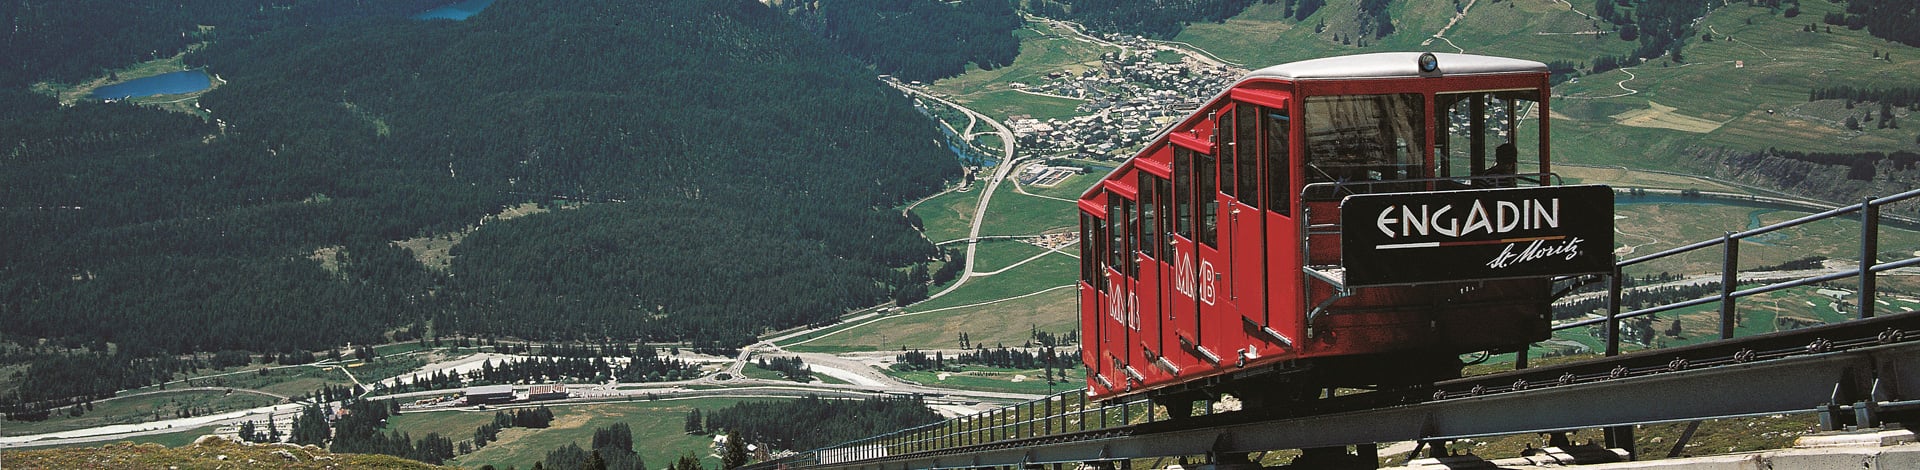 Zahnradbahn St. Moritz